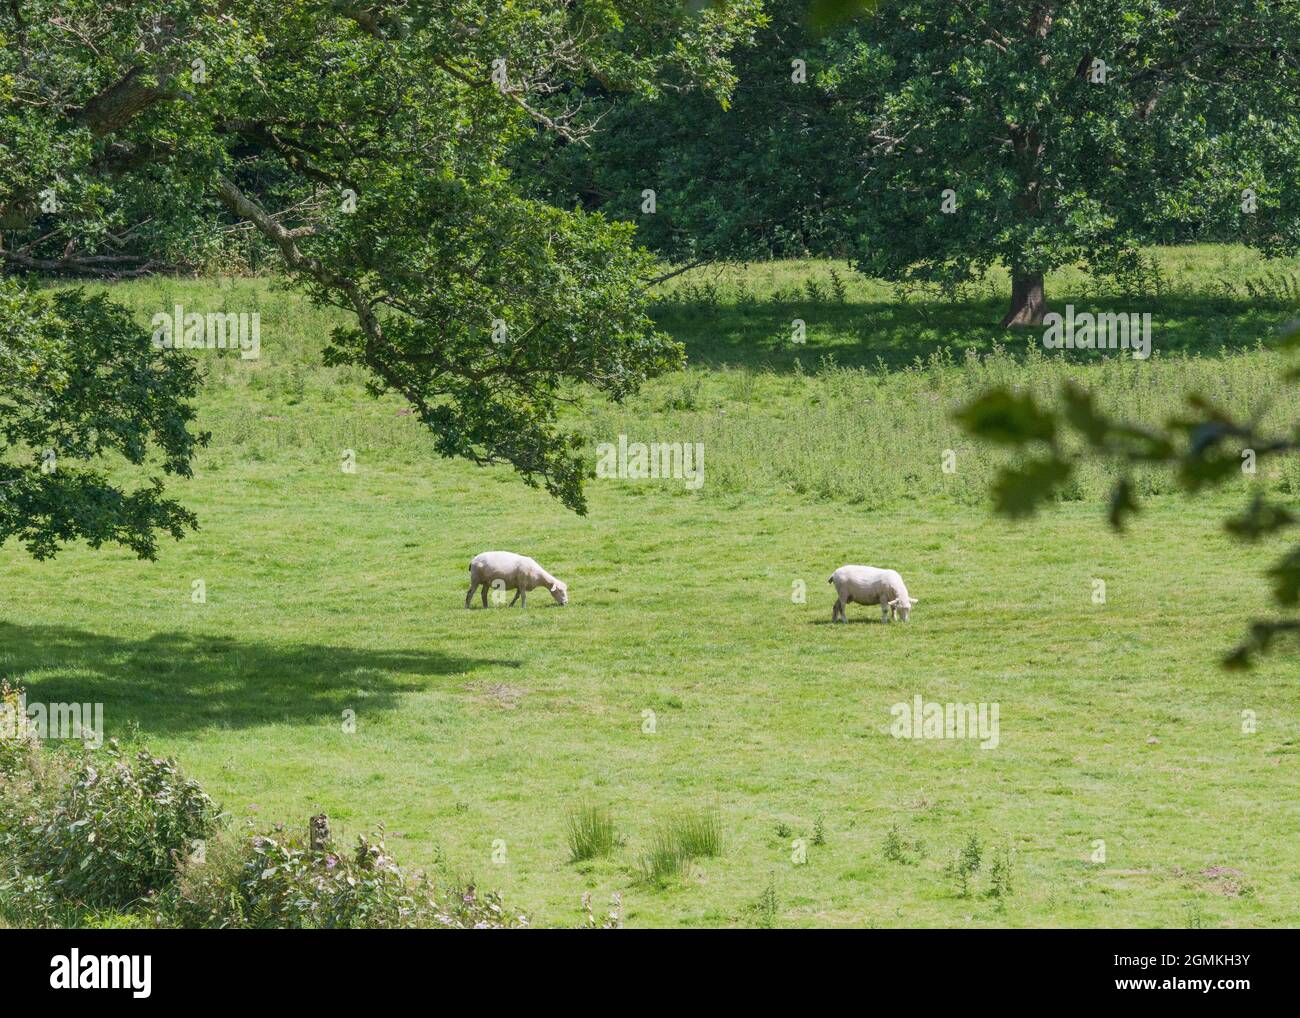 Aufnahme der Weide (in Cornwall) mit Schafen, die Gras weiden. Metapher für Ernährungssicherheit / Anbau von Lebensmitteln. Tierhaltung Großbritannien. Stockfoto